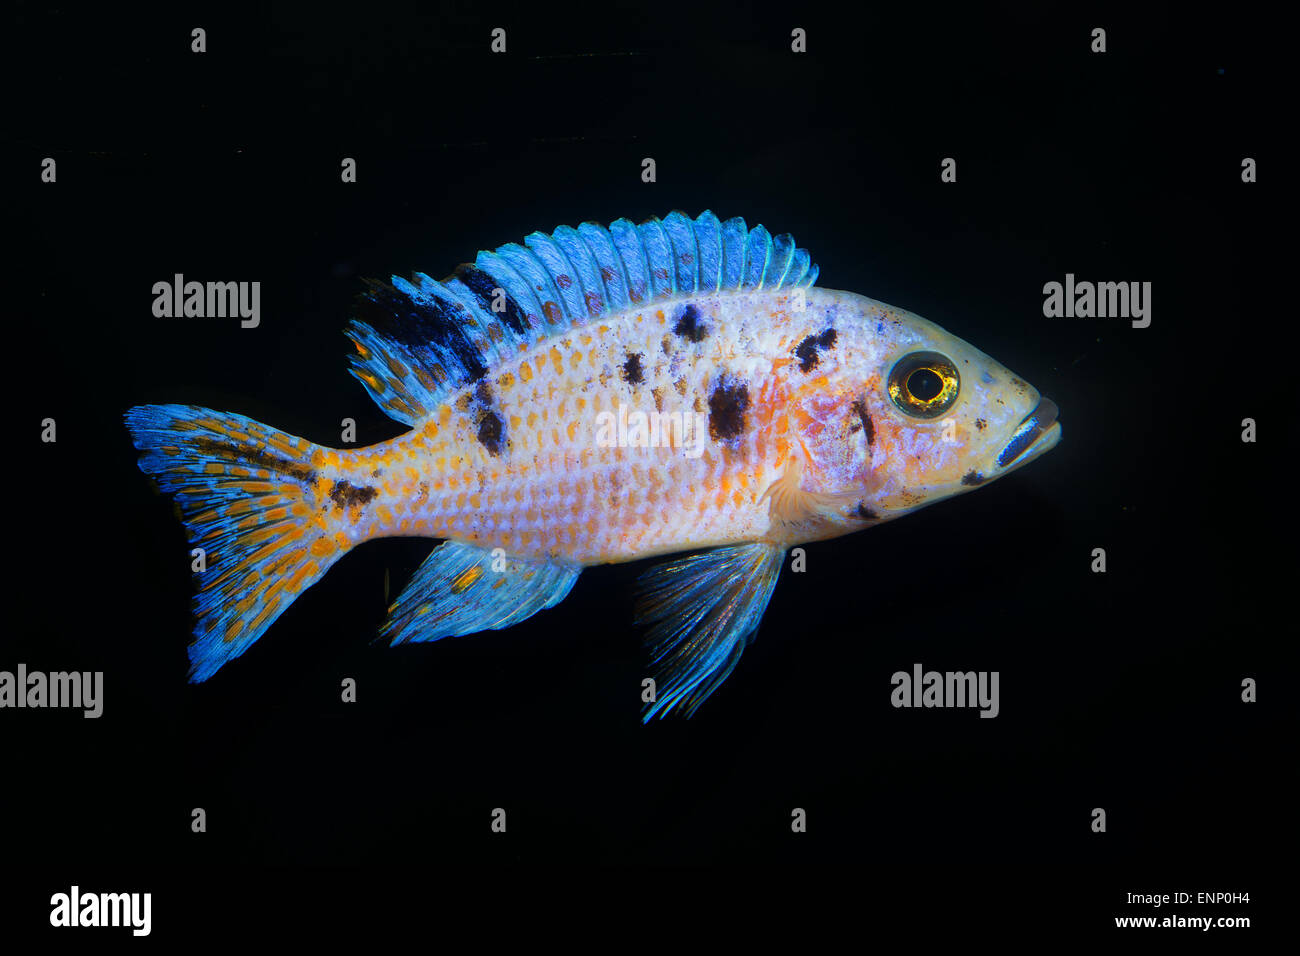 Nice aquarium cichlid fish from genus Aulonocara. Stock Photo